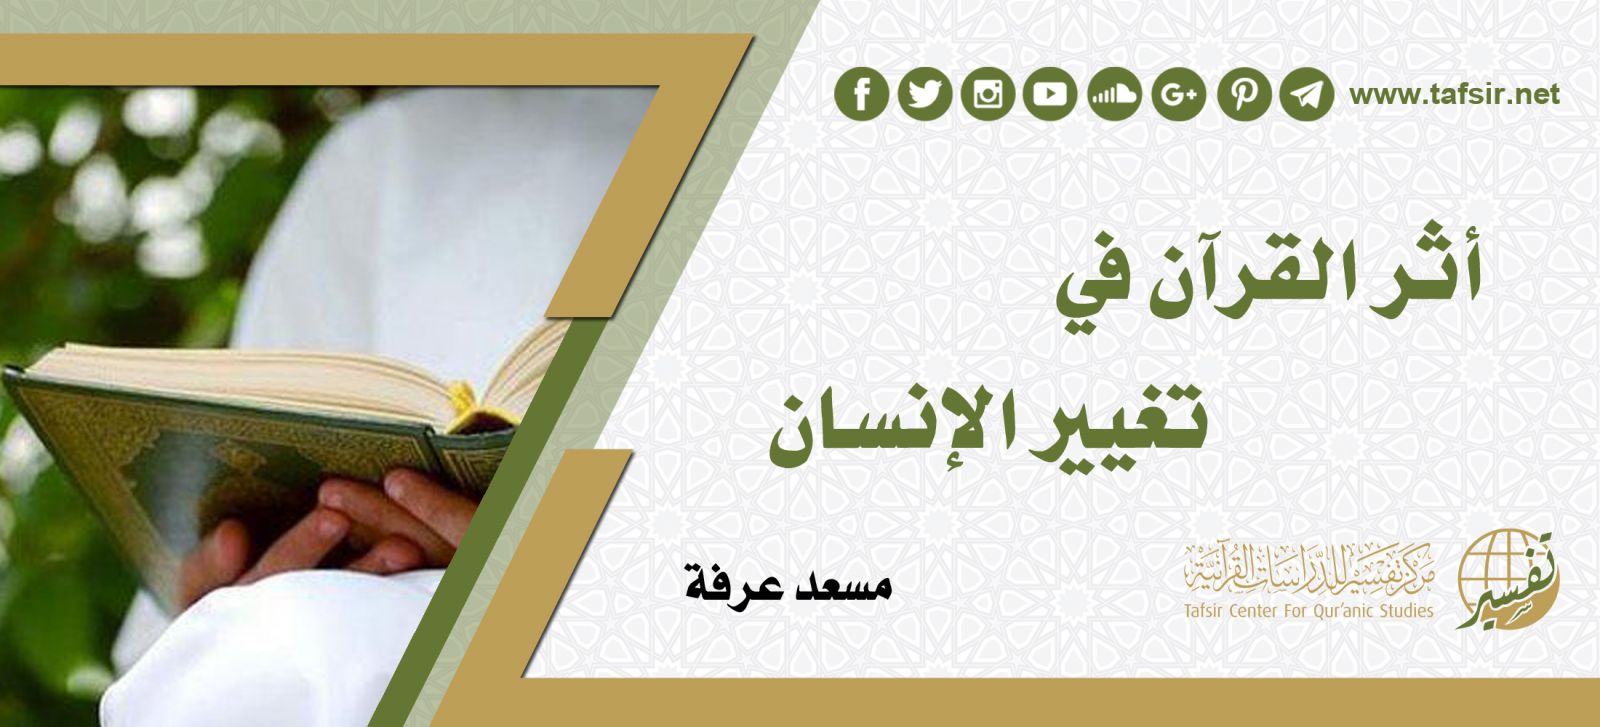 أثر القرآن في تغيير الإنسان Tafsir Center For Quranic Studies